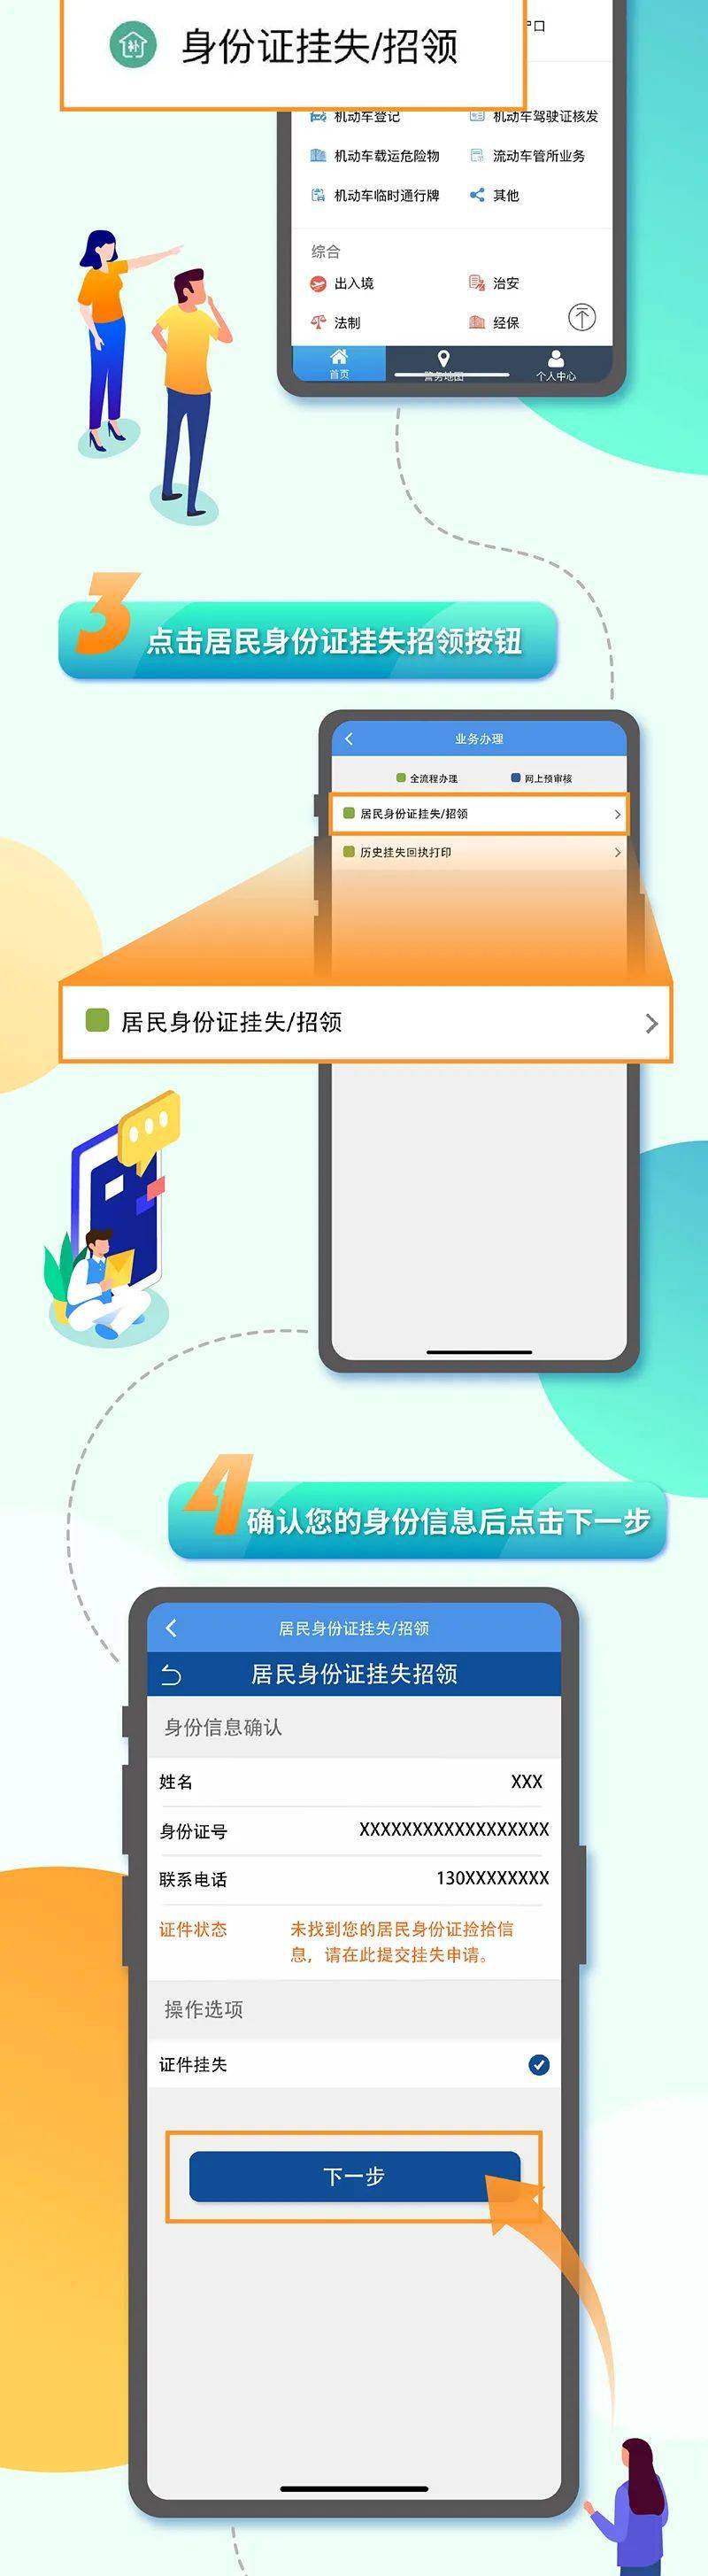 天津公安民生服务平台:《居民身份证挂失》可以这样办!